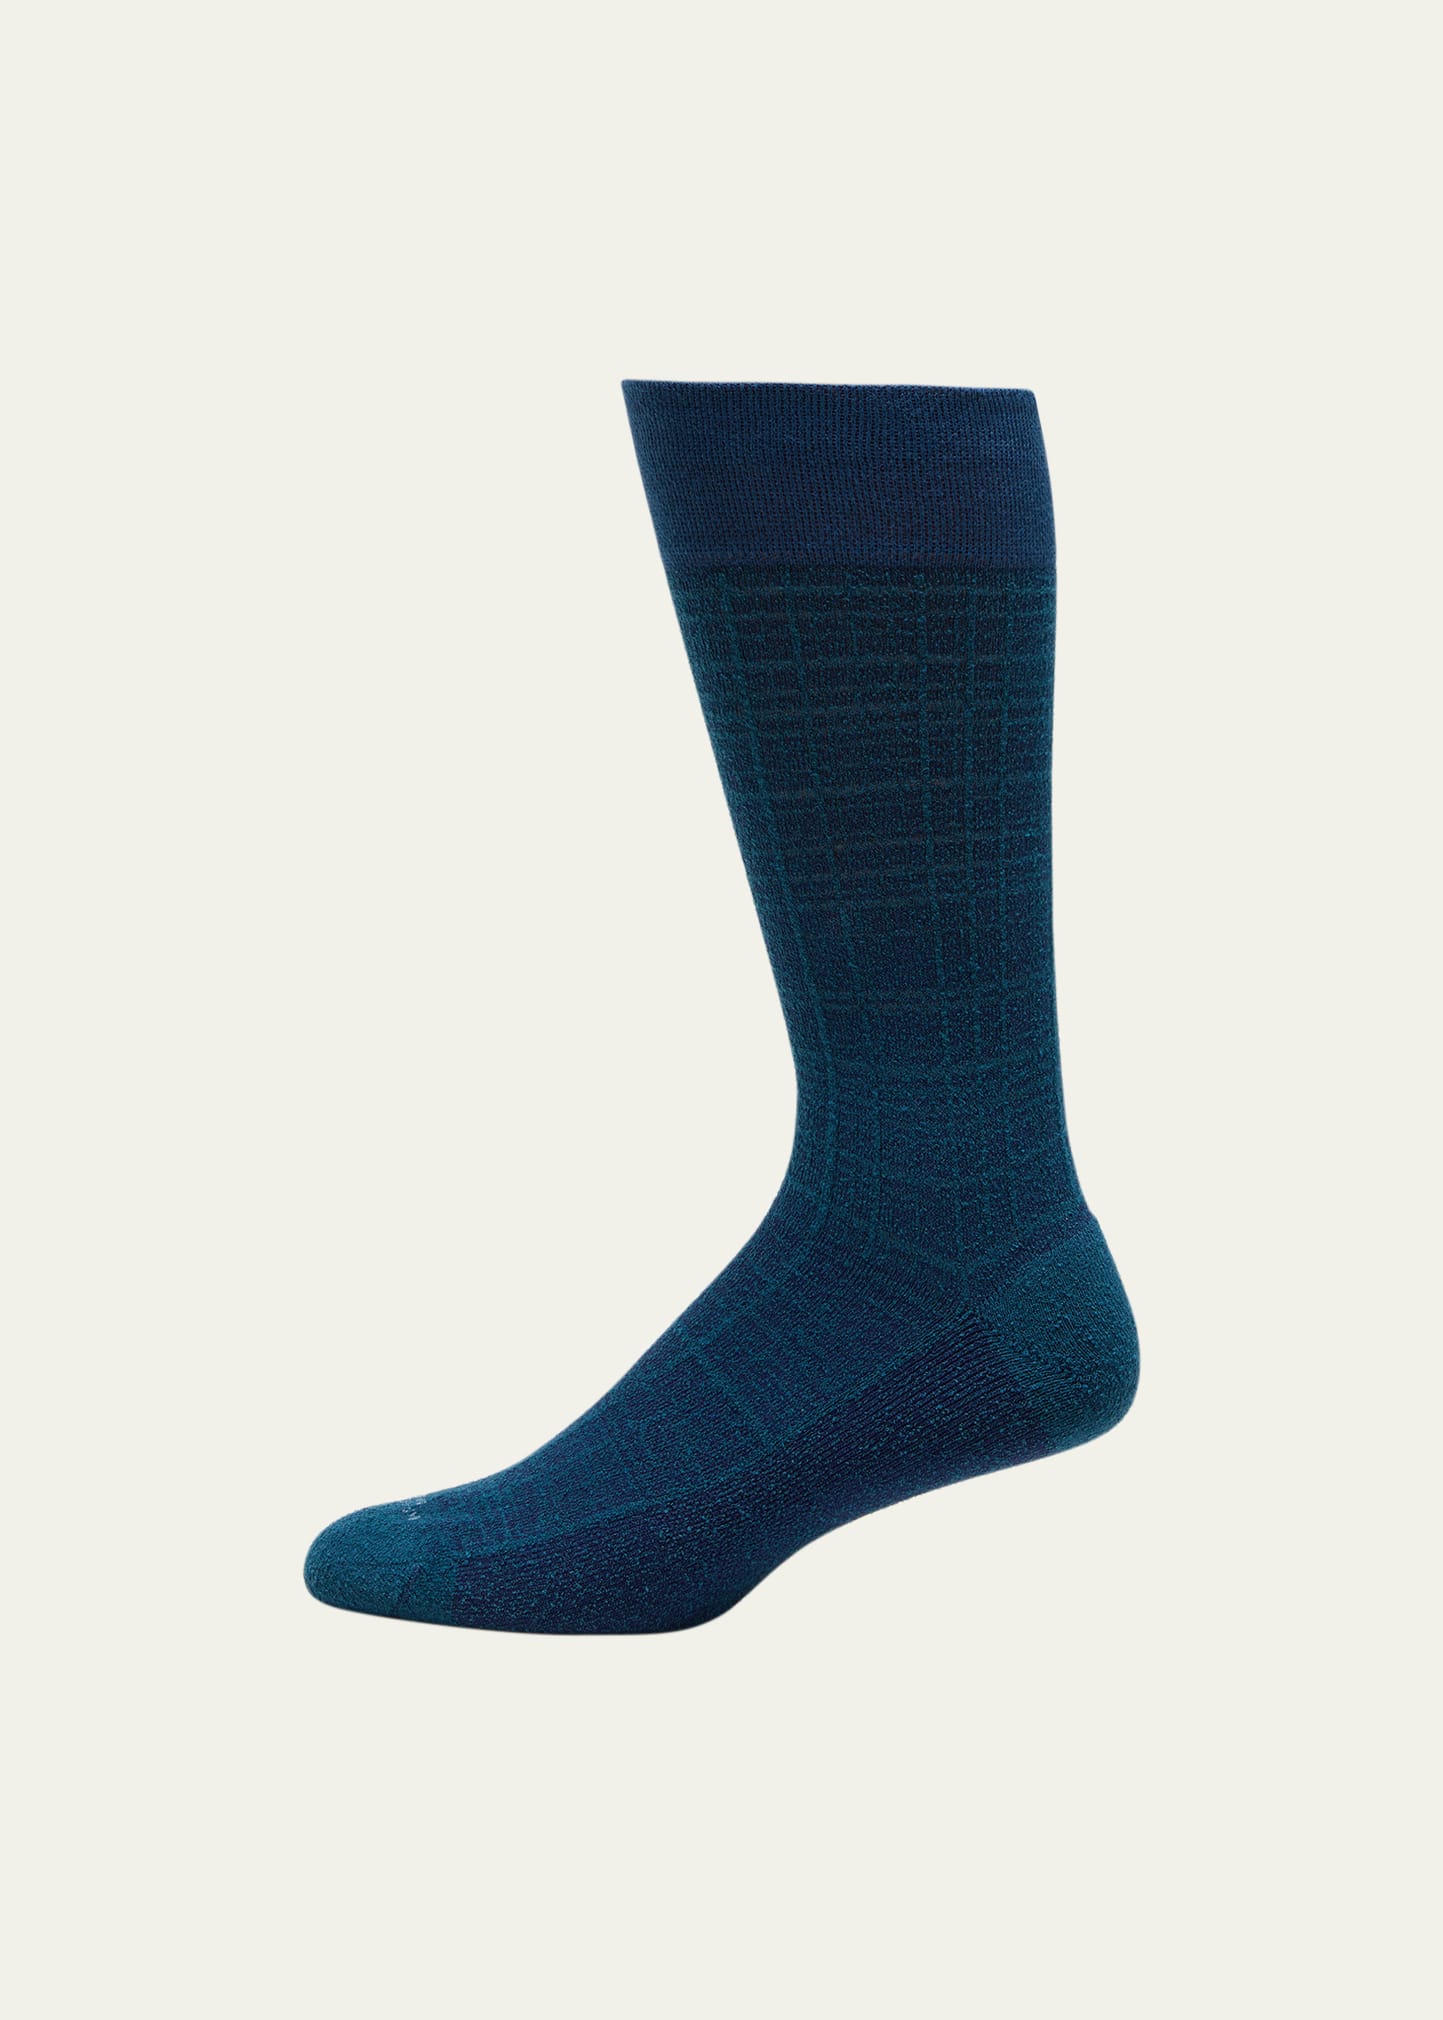 Men's Tartan Check Mid-Calf Socks